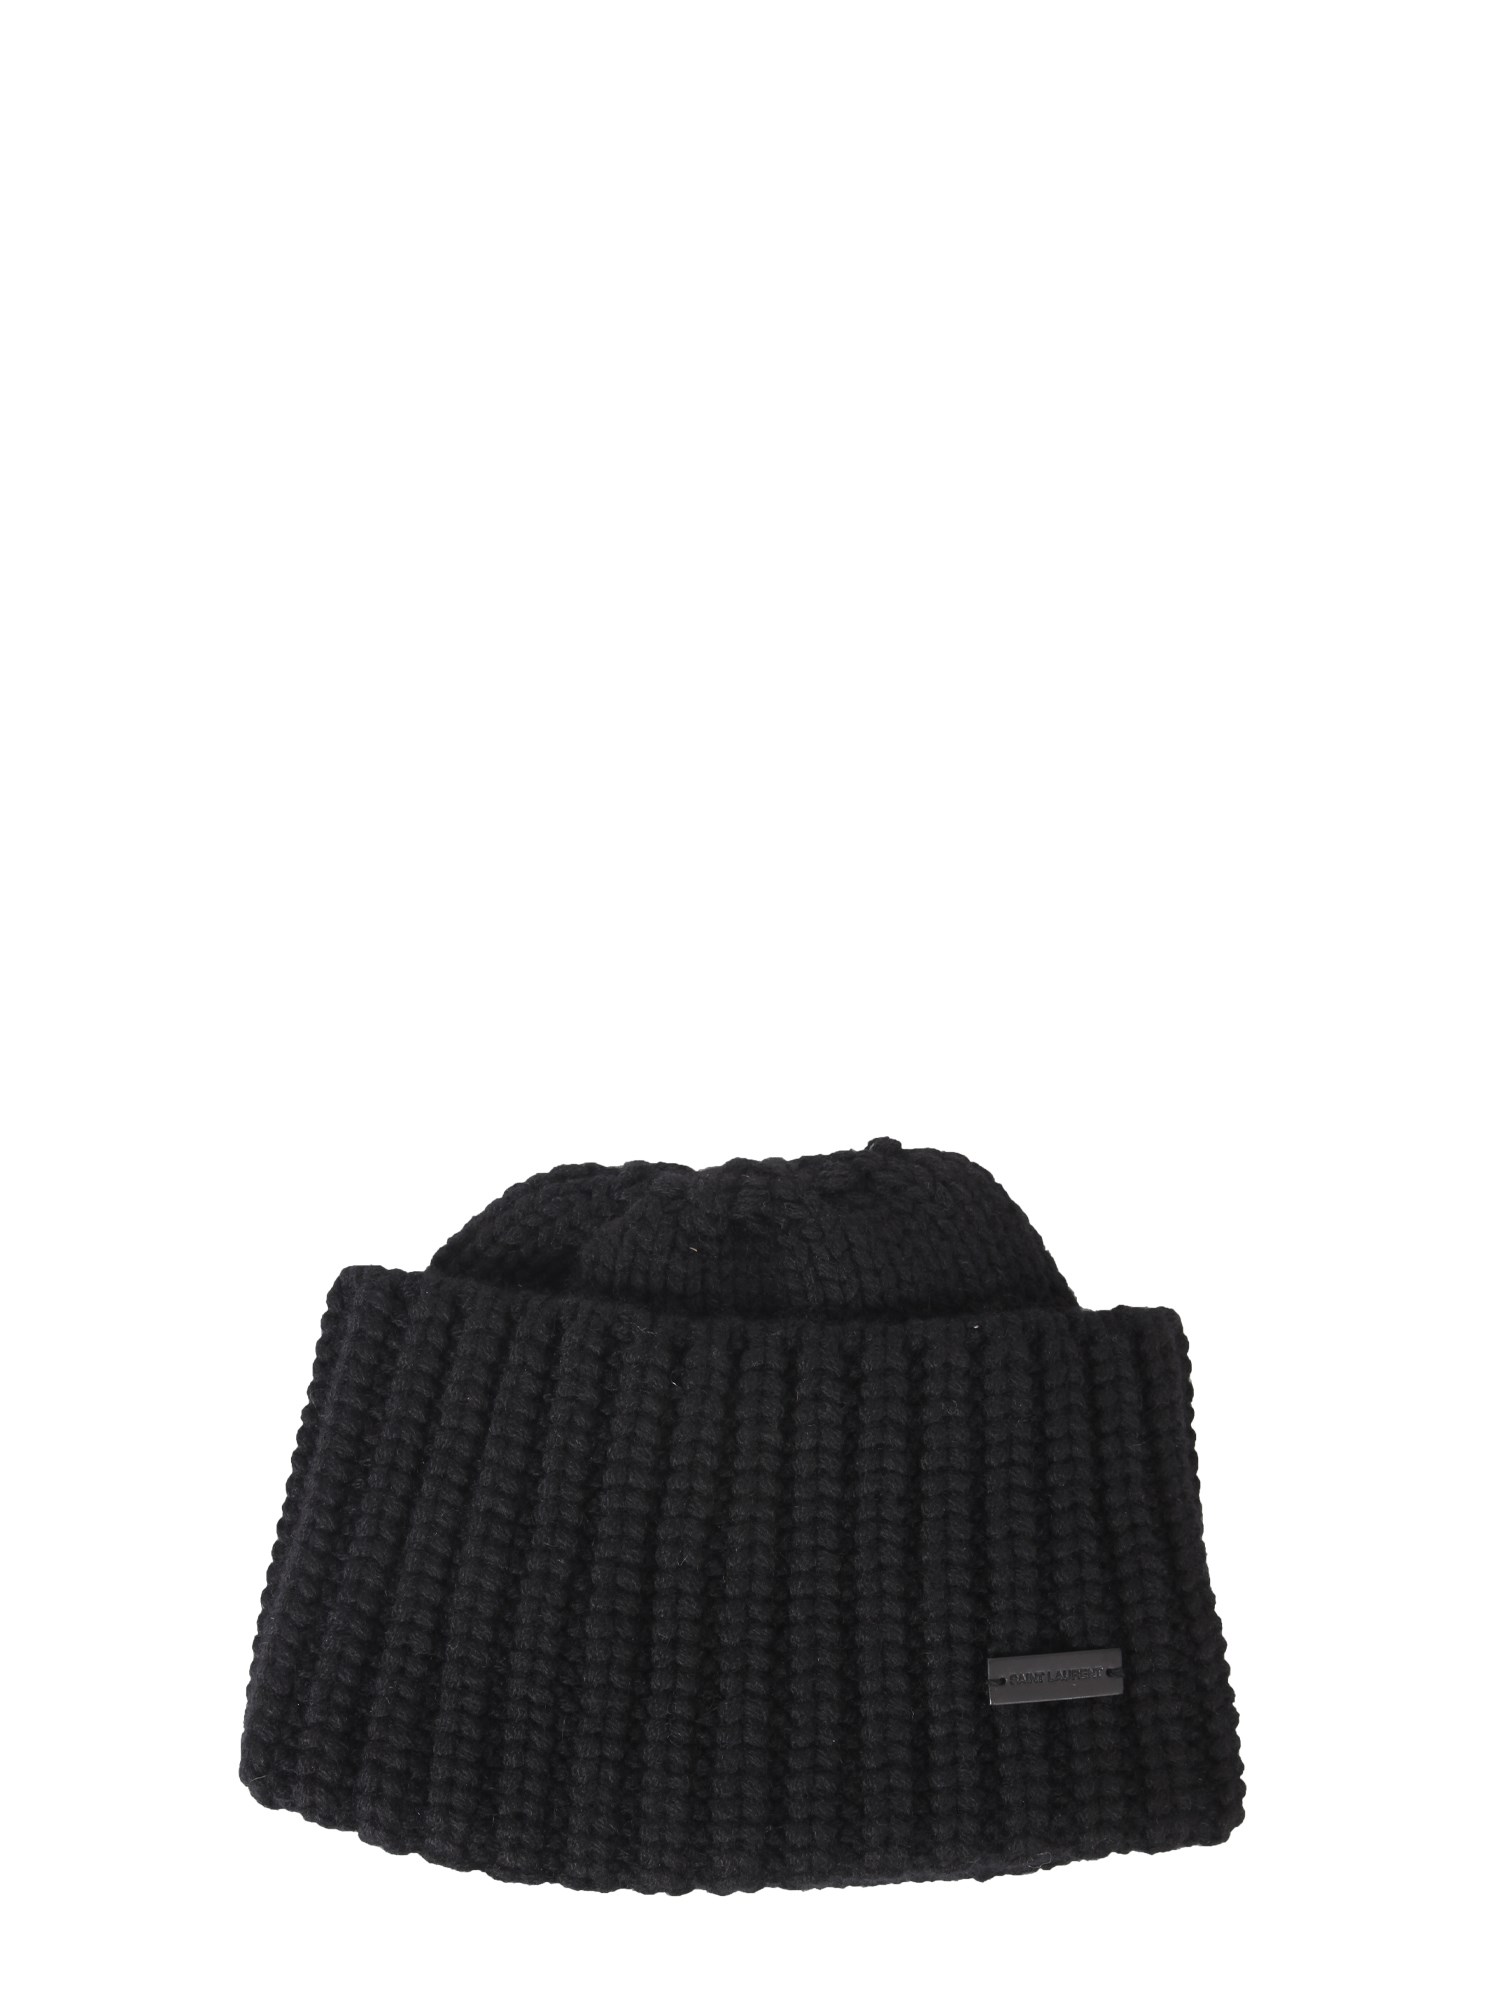 saint laurent cashmere knit hat